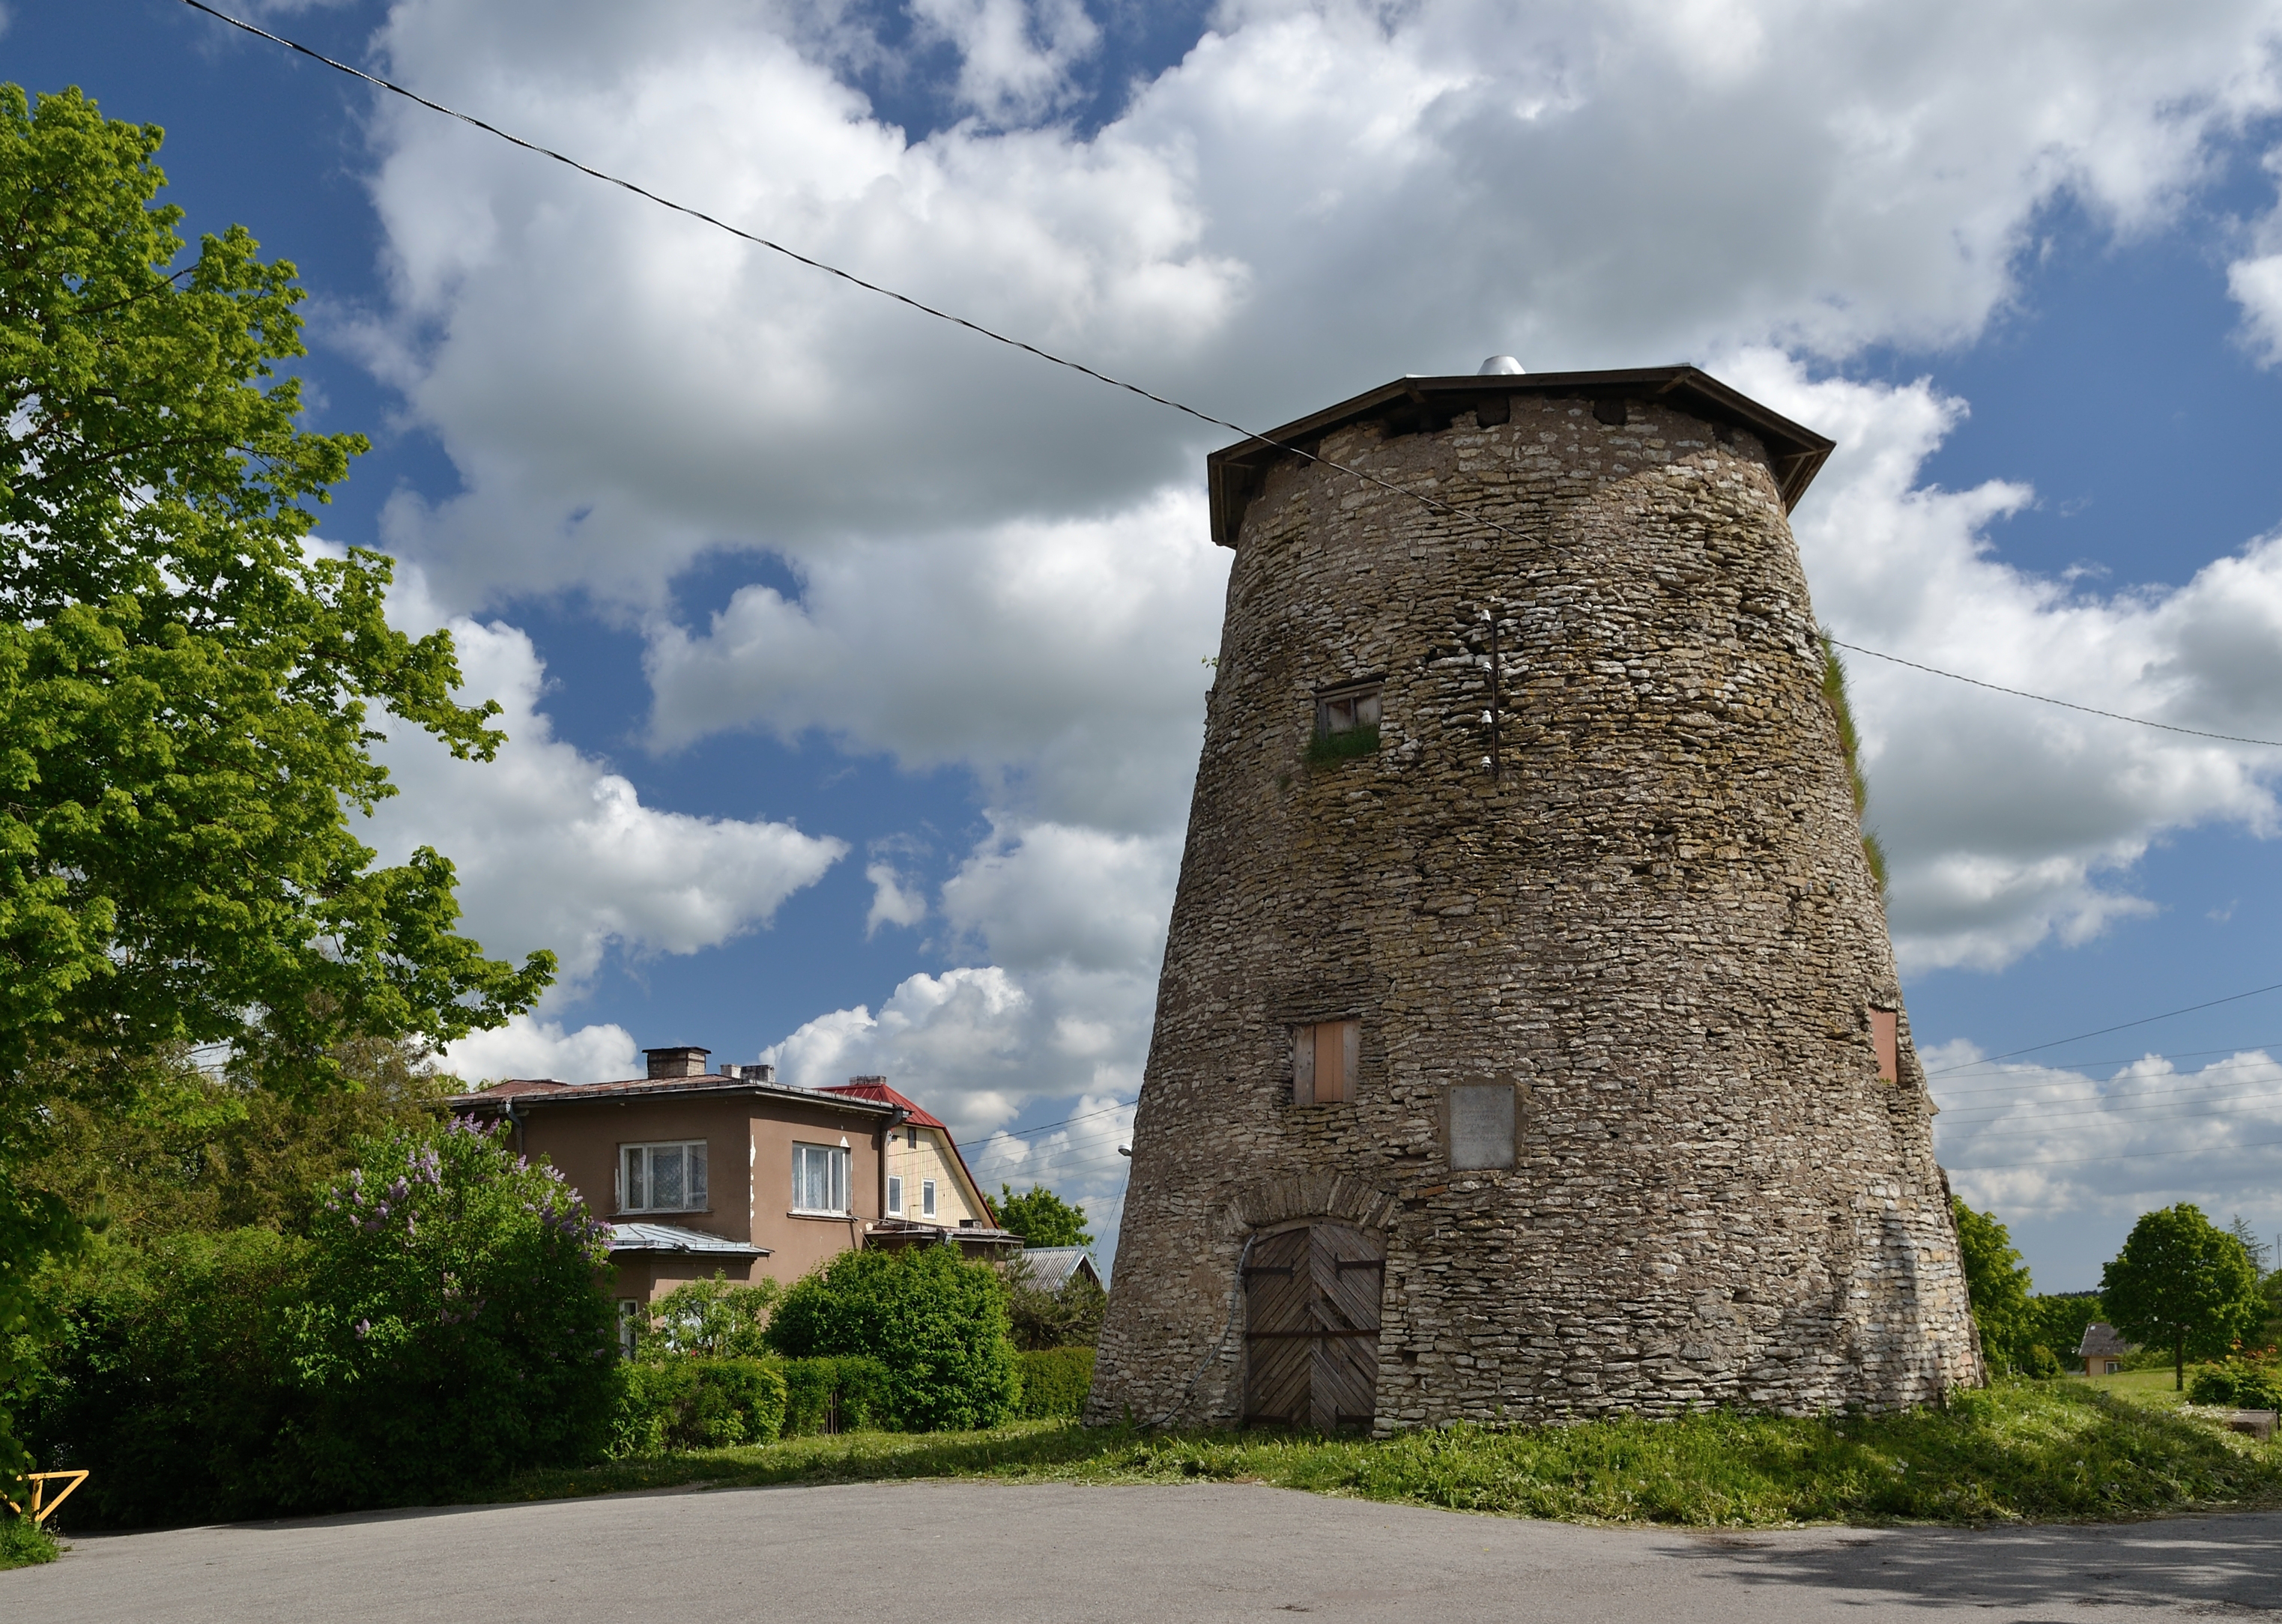 Rakvere windmill